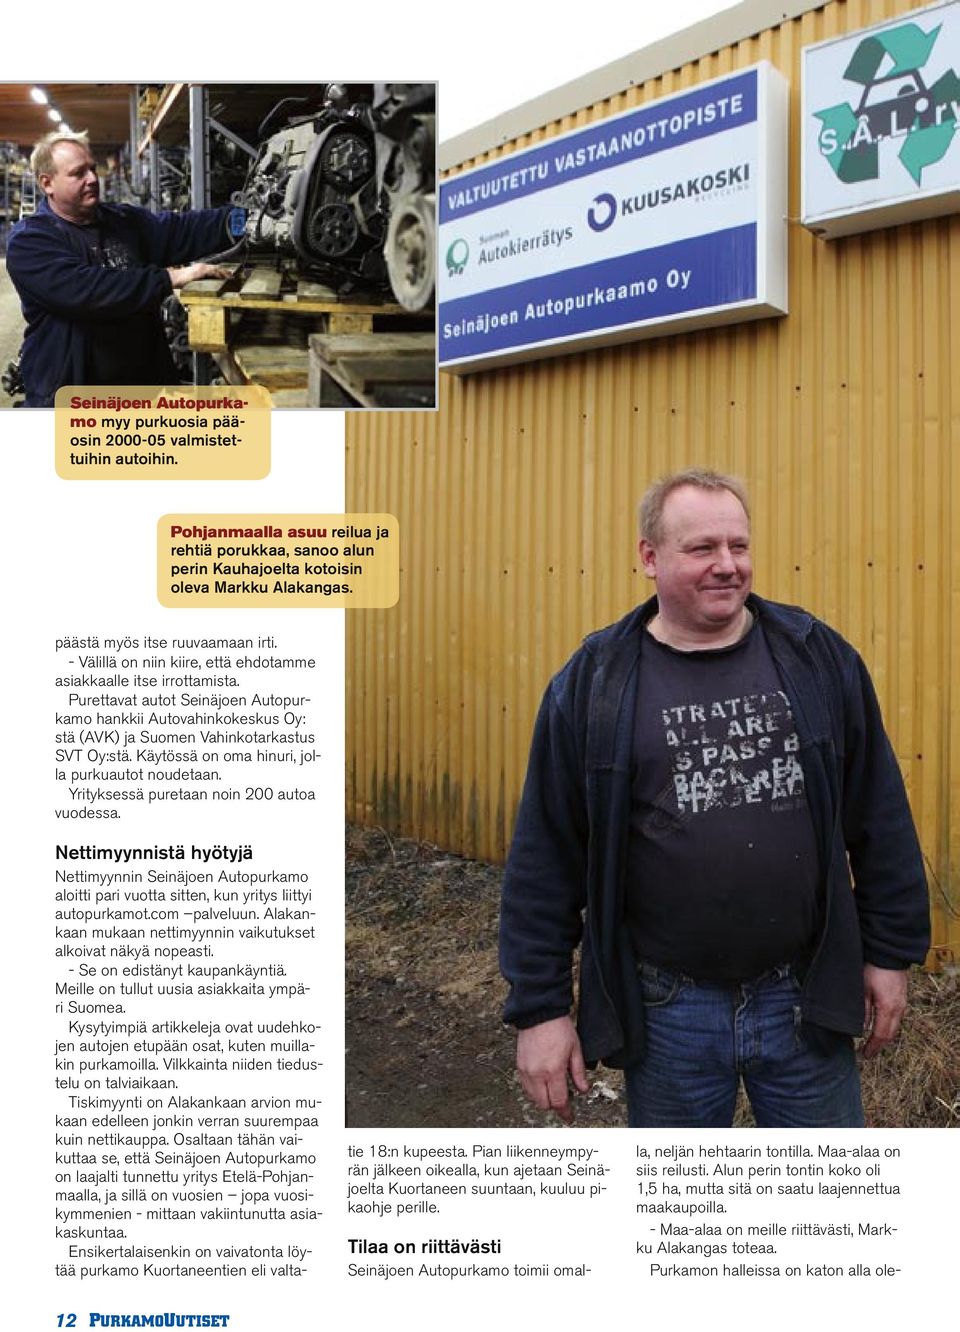 Purettavat autot Seinäjoen Autopurkamo hankkii Autovahinkokeskus Oy: stä (AVK) ja Suomen Vahinkotarkastus SVT Oy:stä. Käytössä on oma hinuri, jolla purkuautot noudetaan.